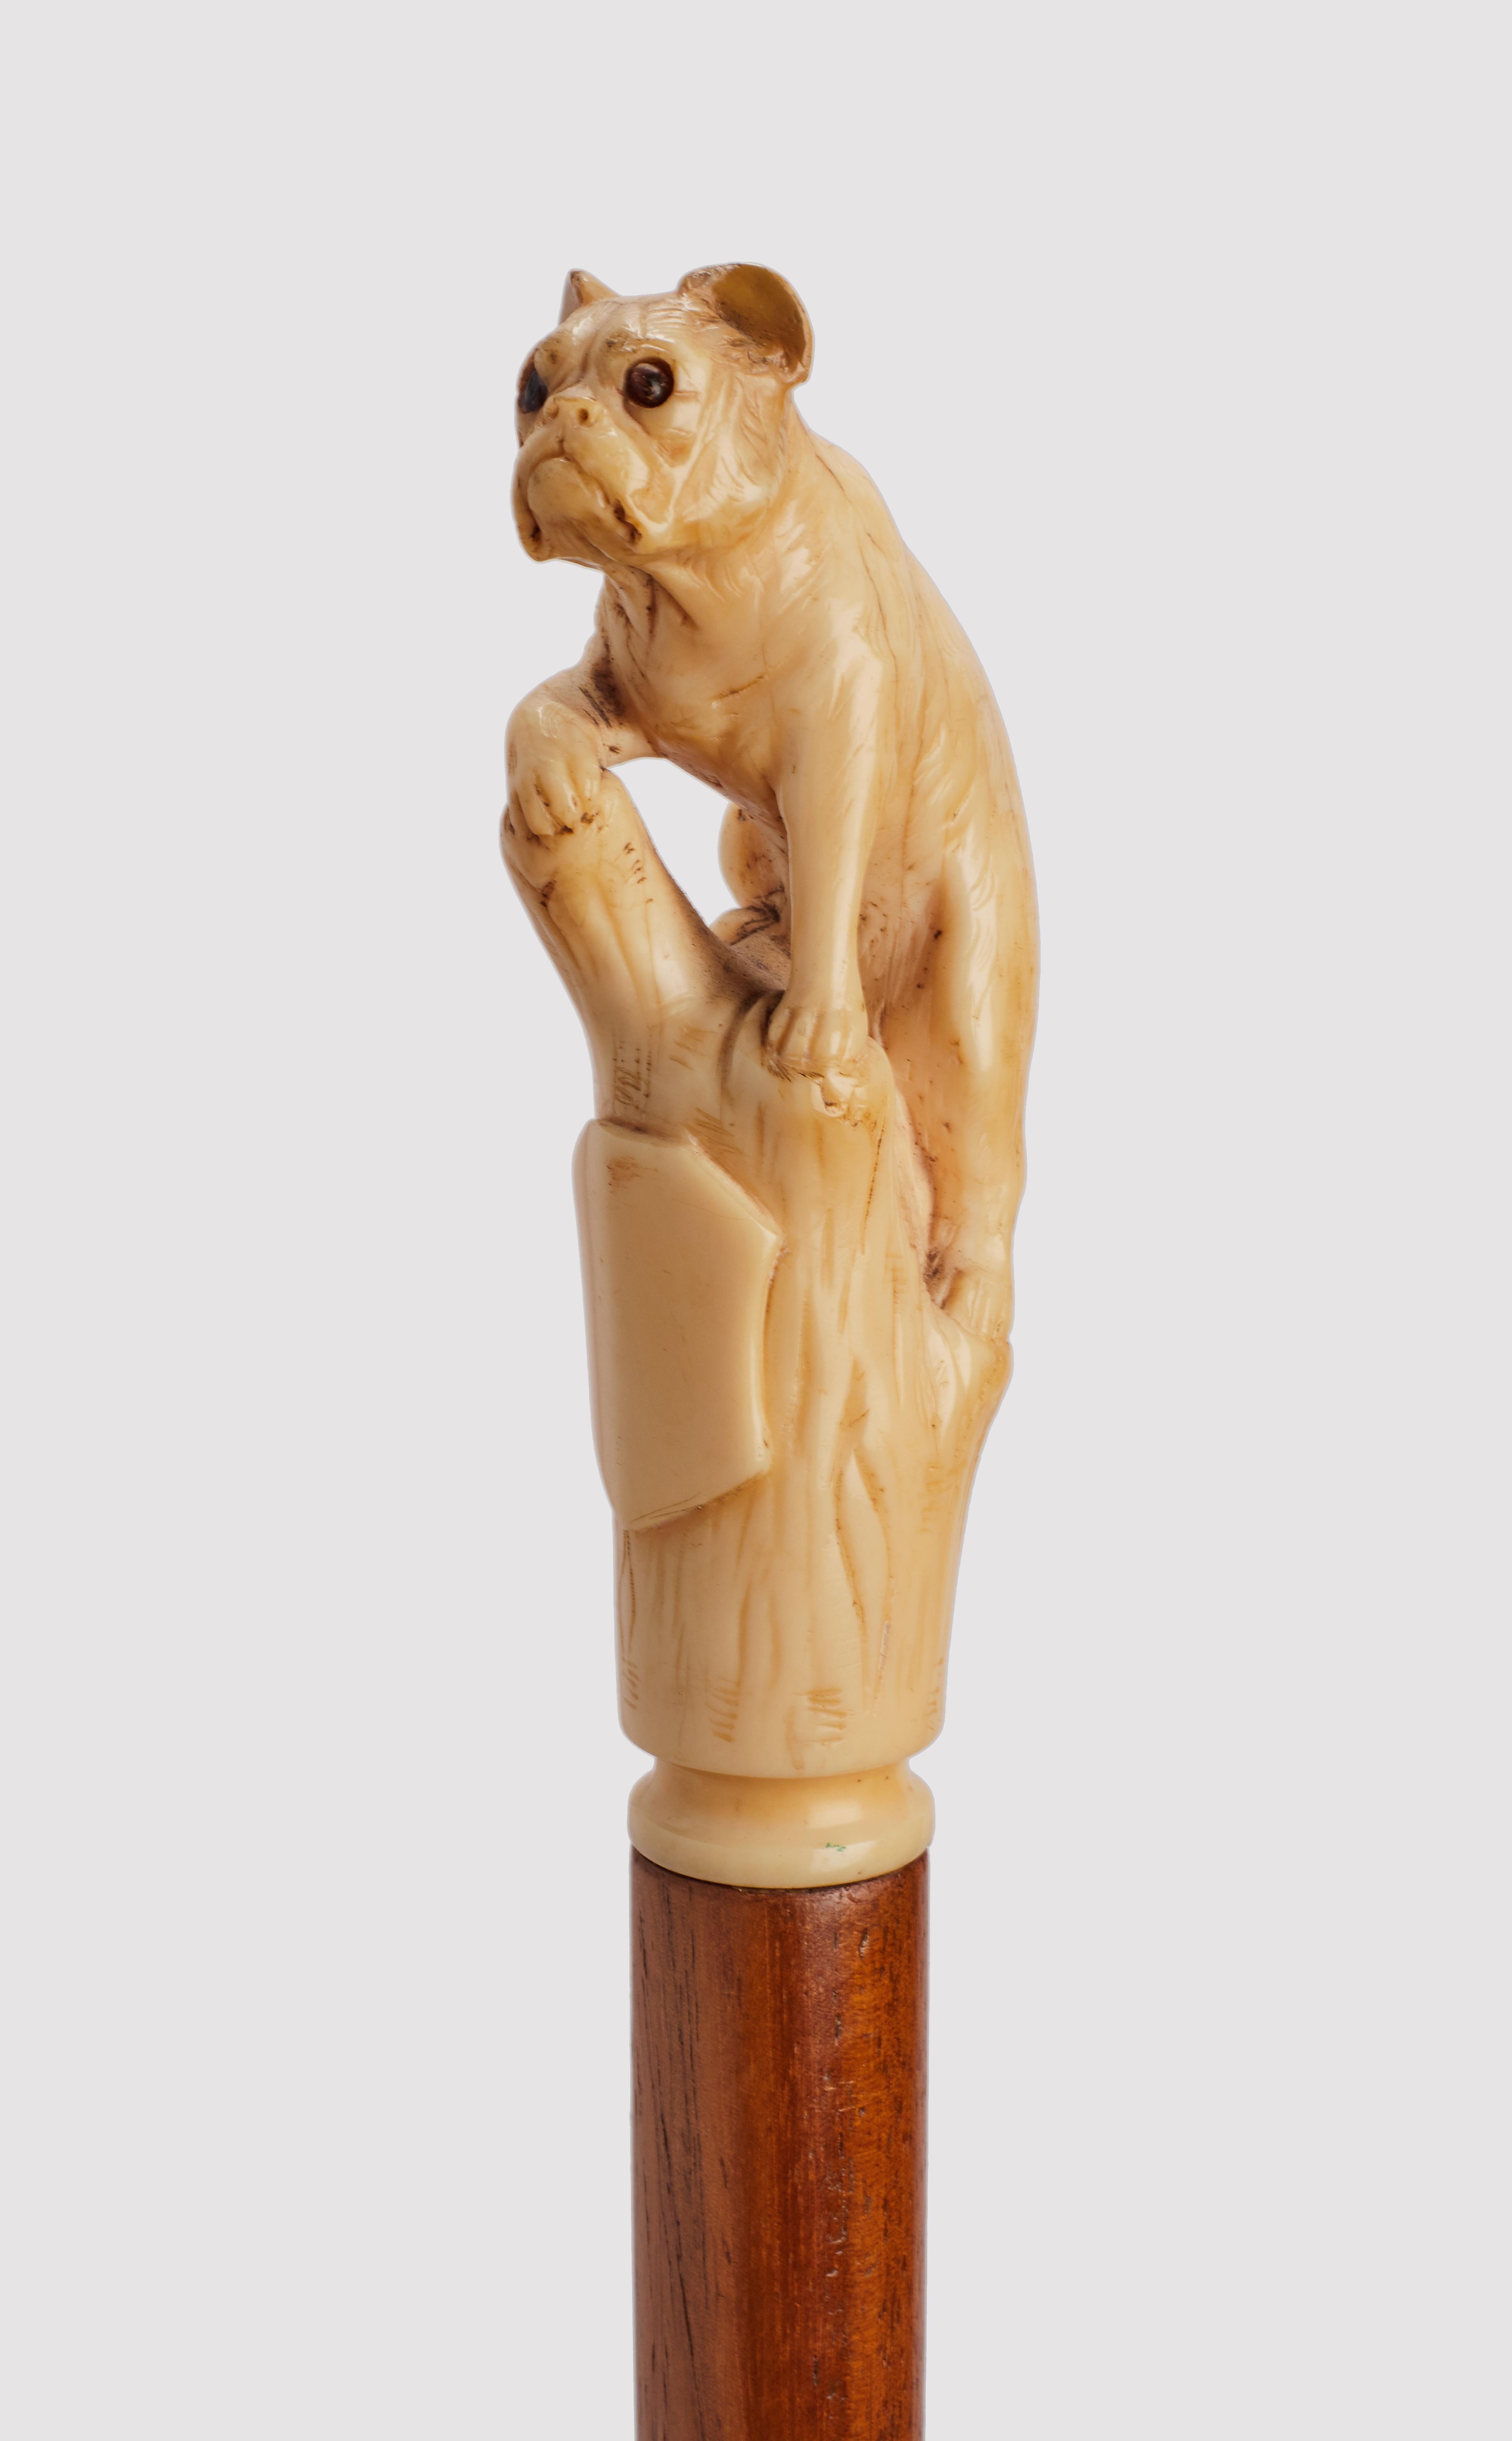 Canne : Manche en ivoire sculpté représentant un bouledogue français assis avec une patte sur une branche. Yeux en verre sulfurisé. Arbre en bois de Malacca. Ferule métallique. France vers 1880. (LIVRAISON DANS L'UE UNIQUEMENT)